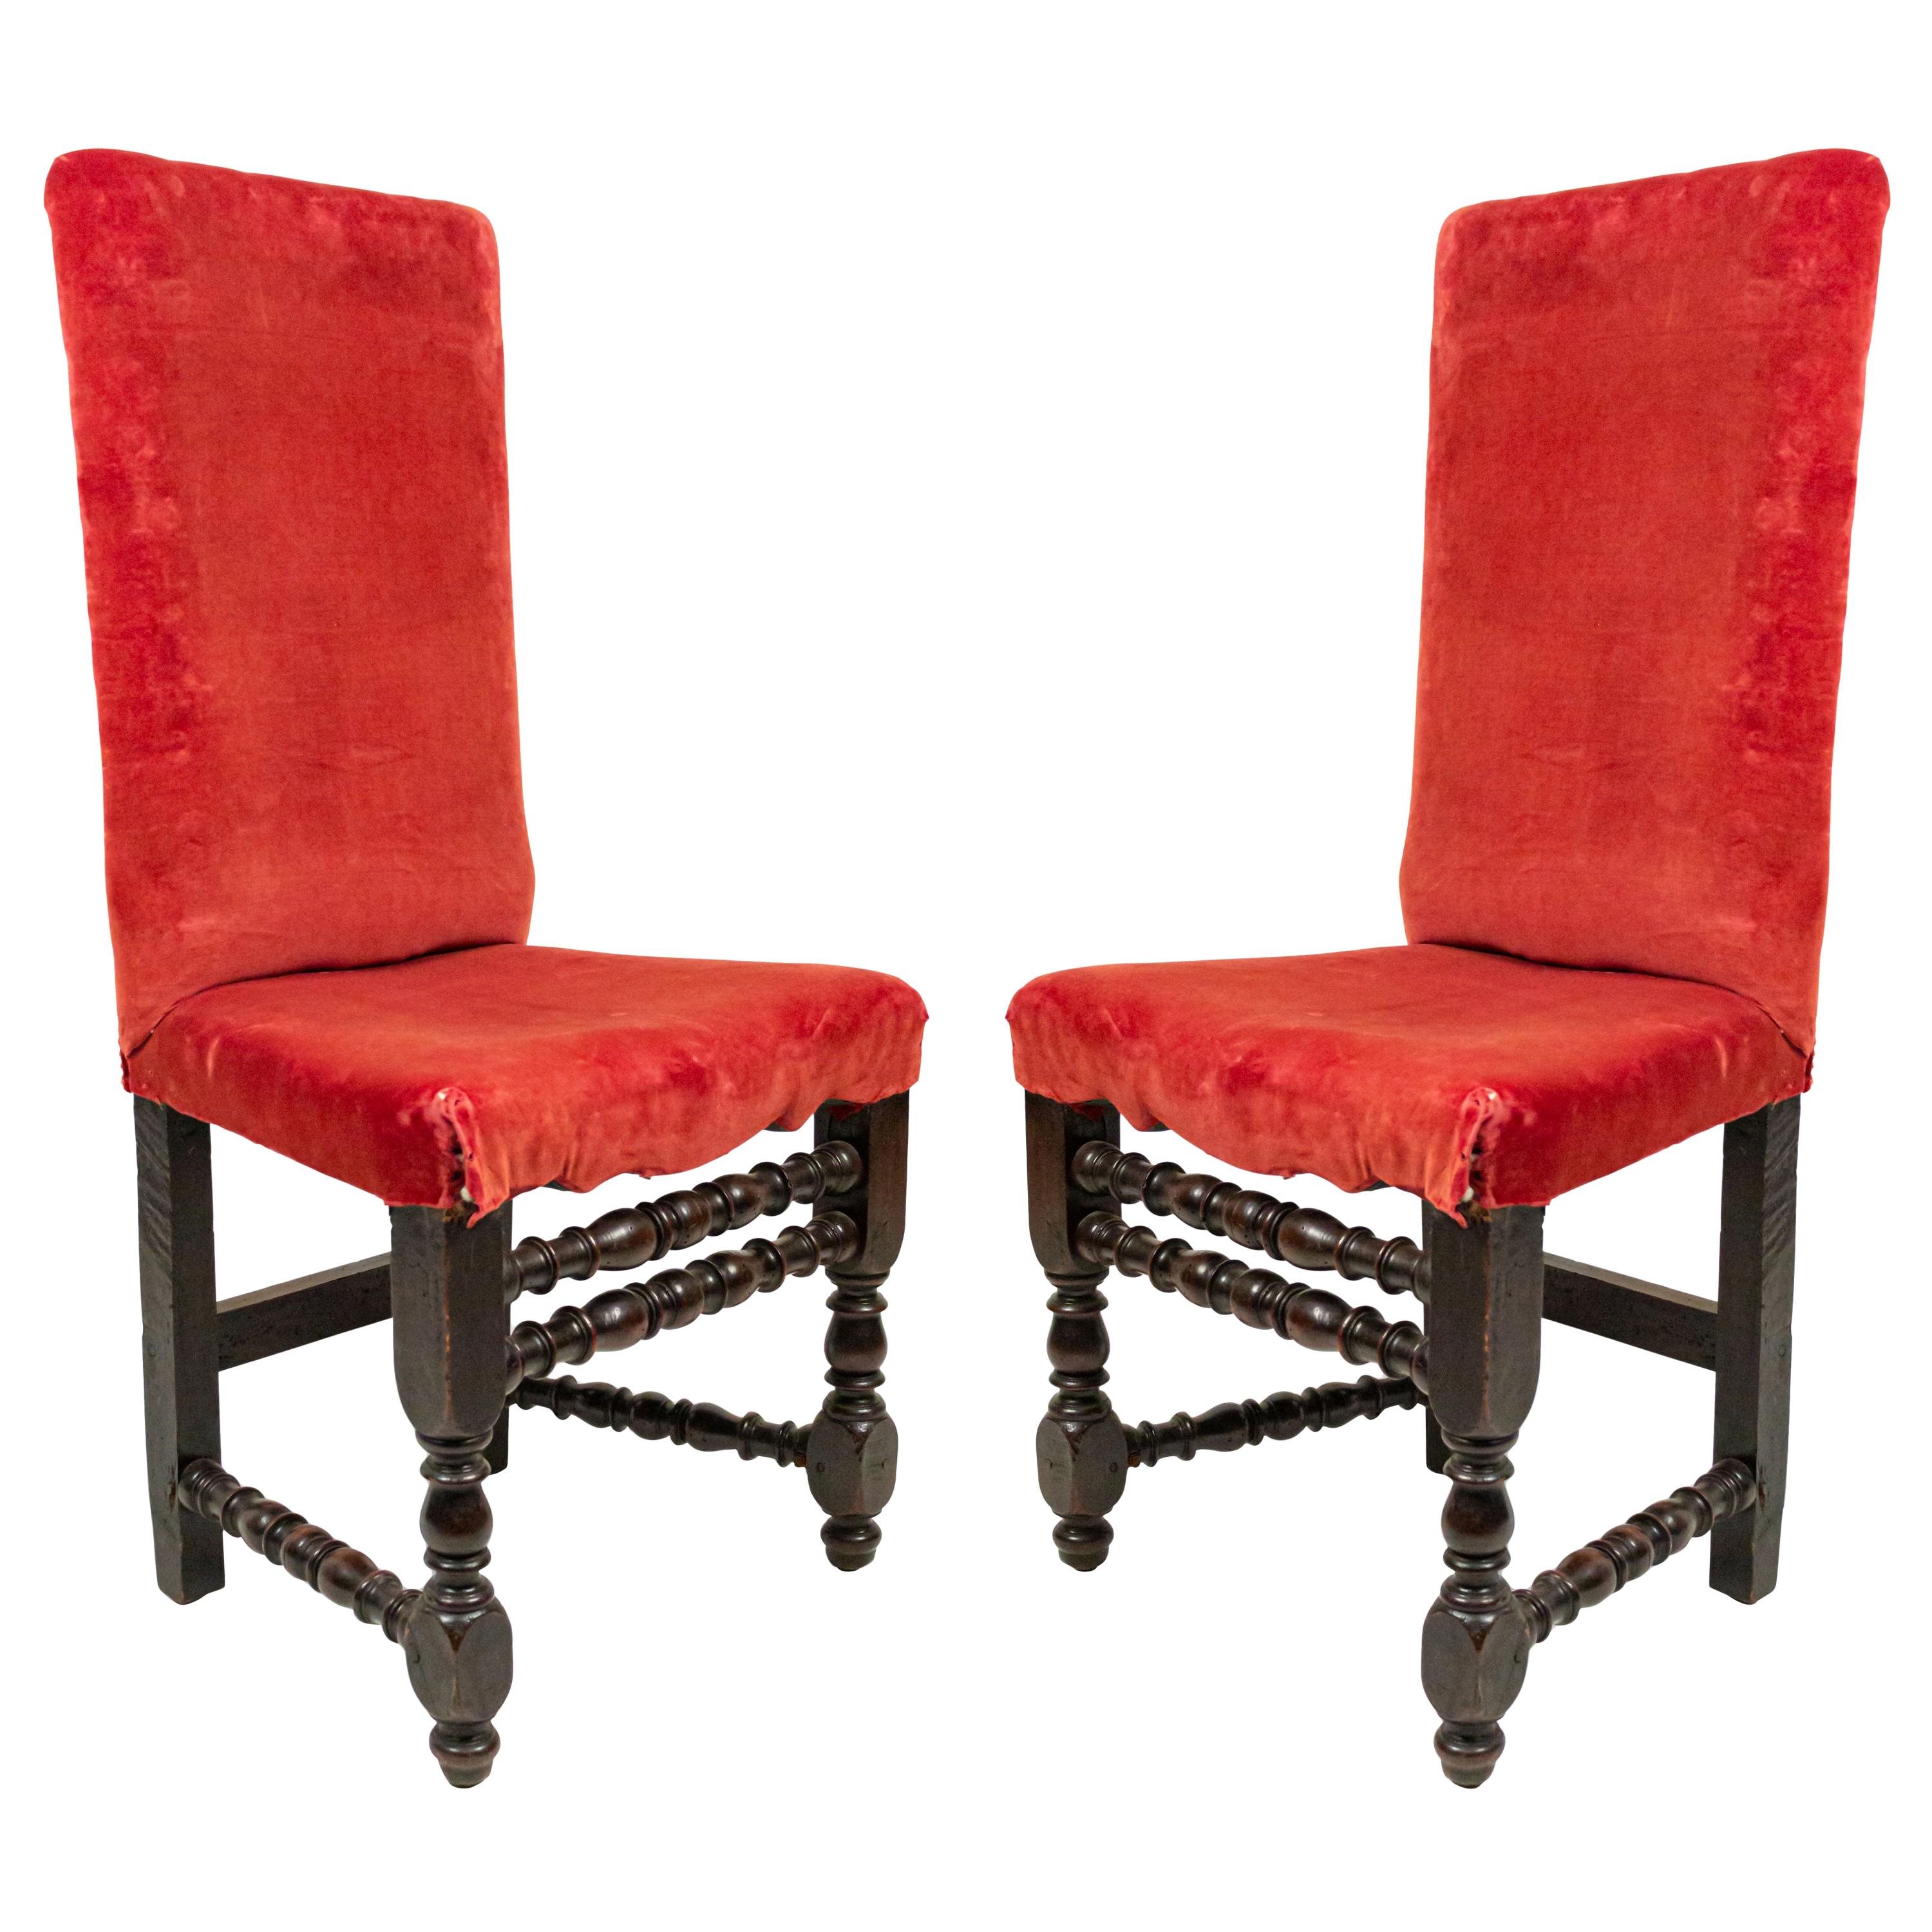 Rote Samt-Stühle der englischen Renaissance